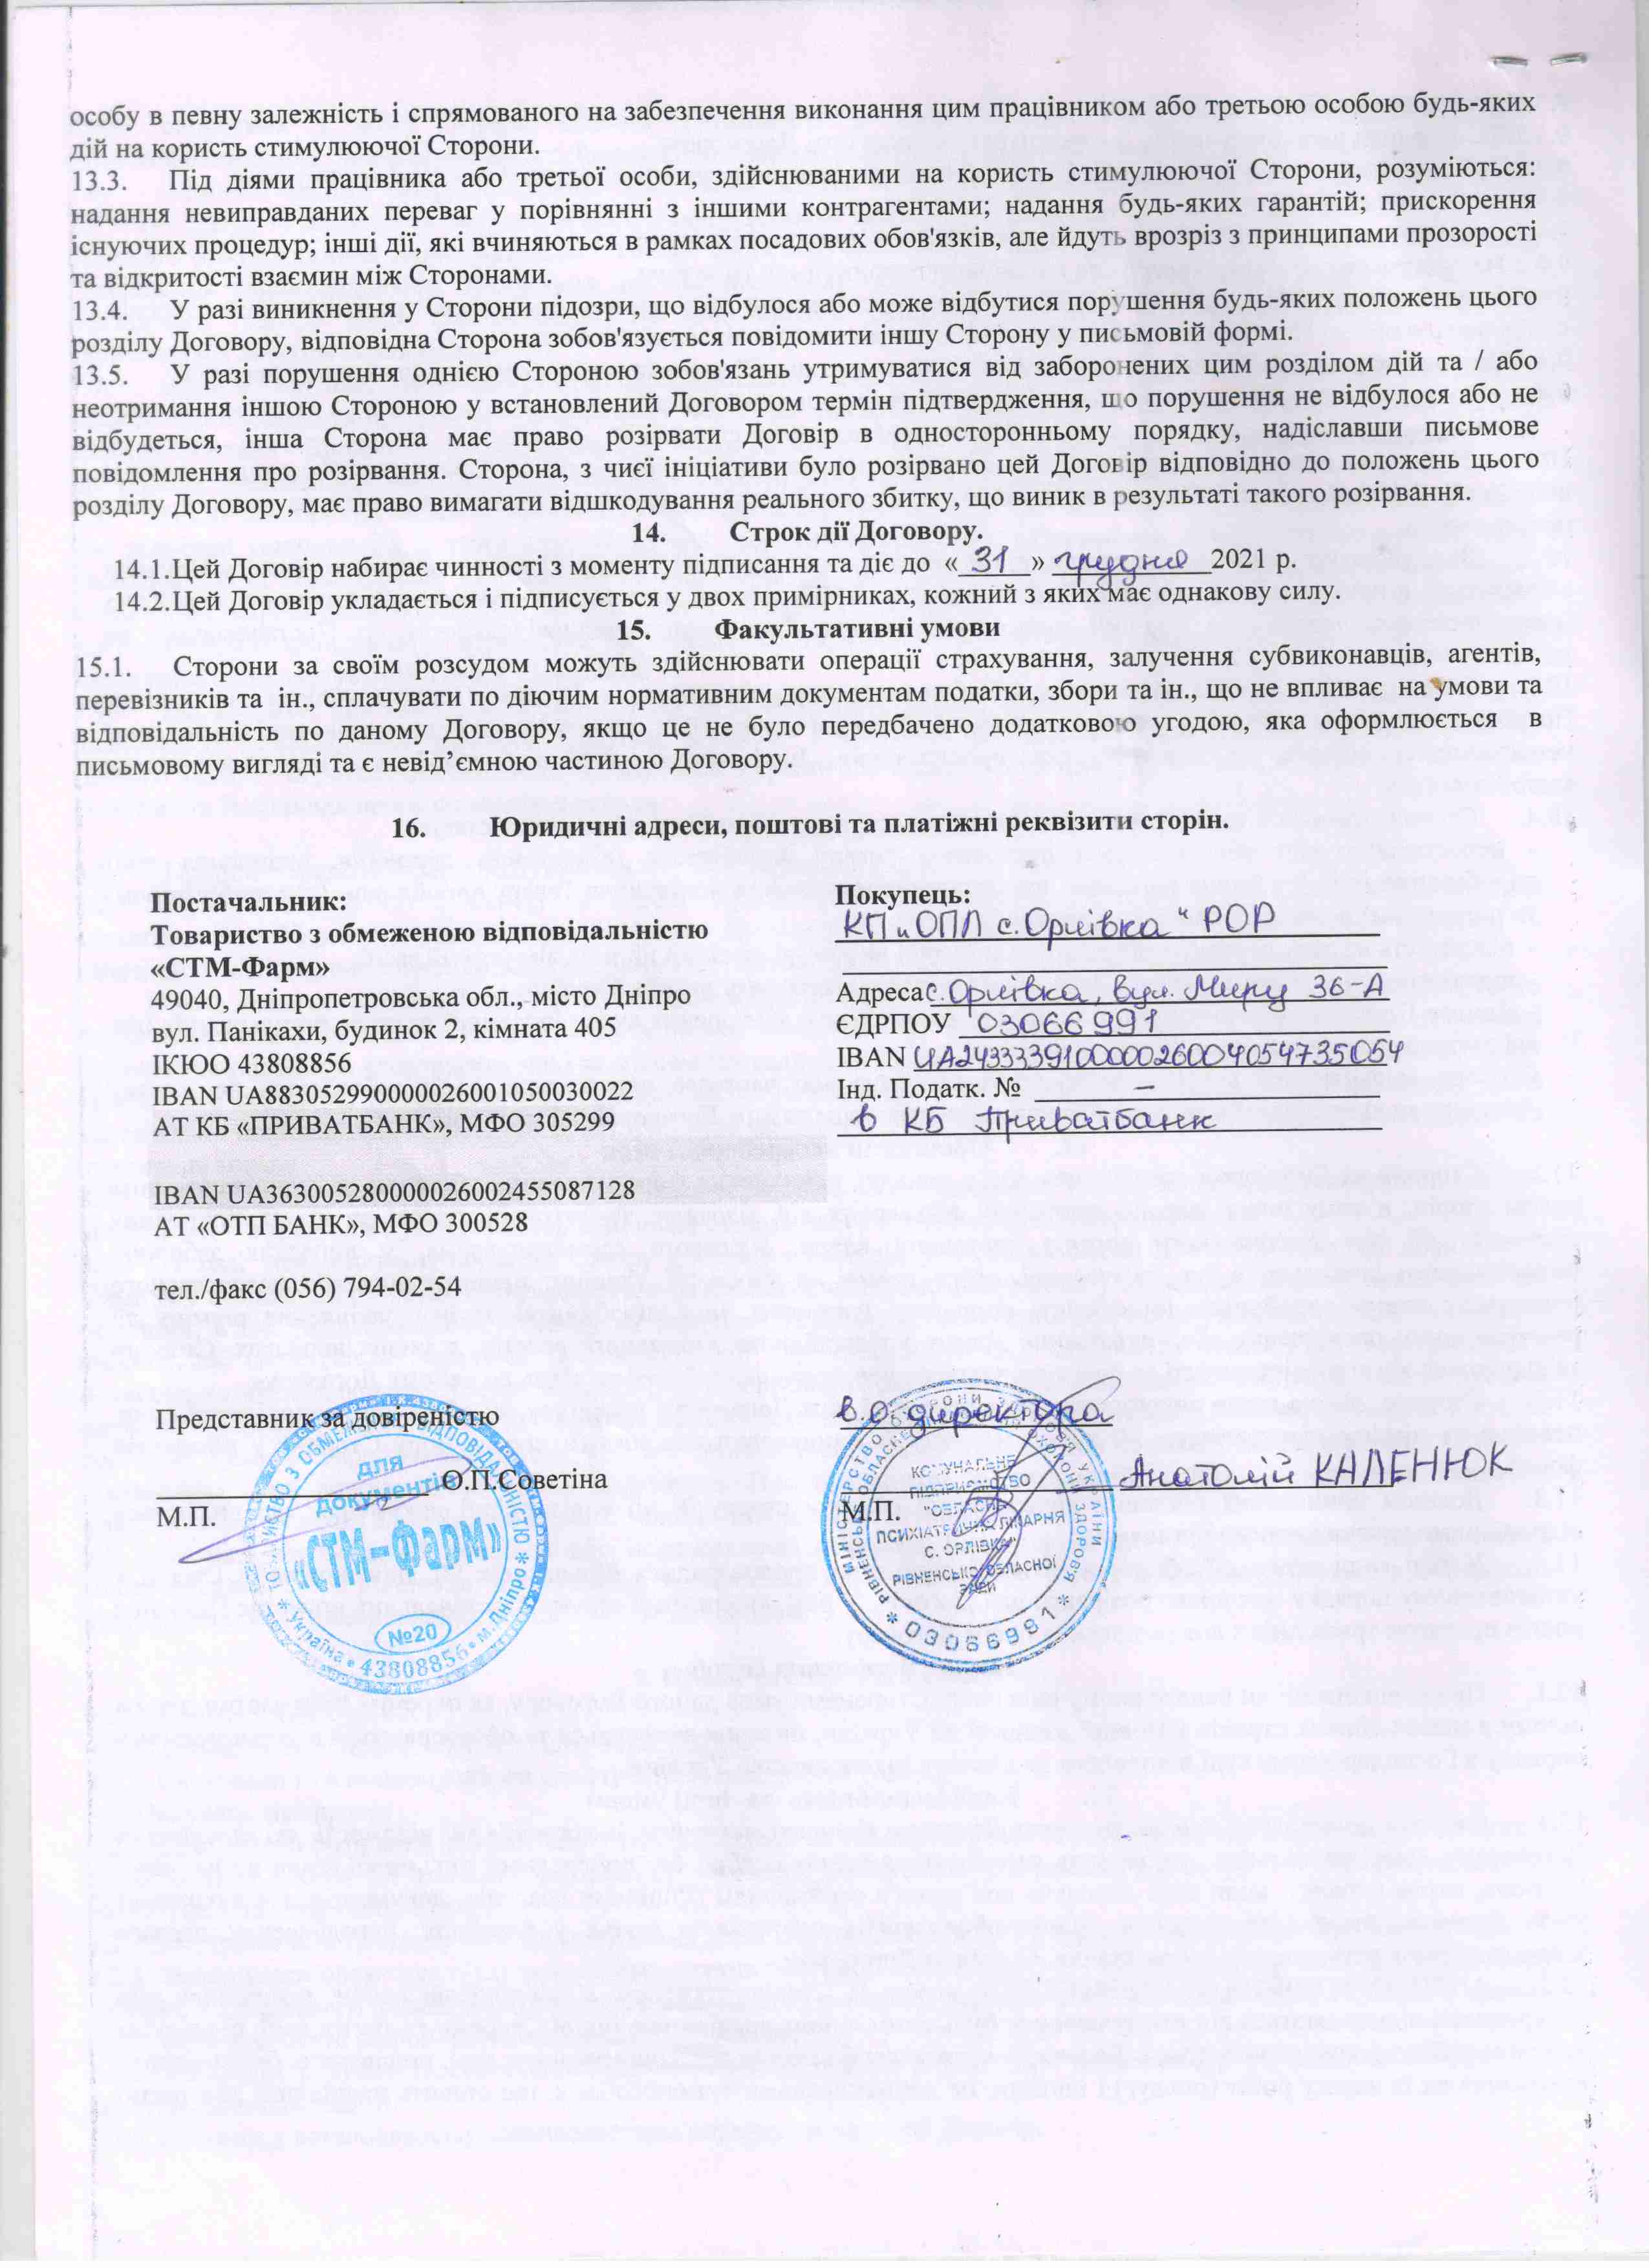 Договір №64 від 18.05.2021 р.